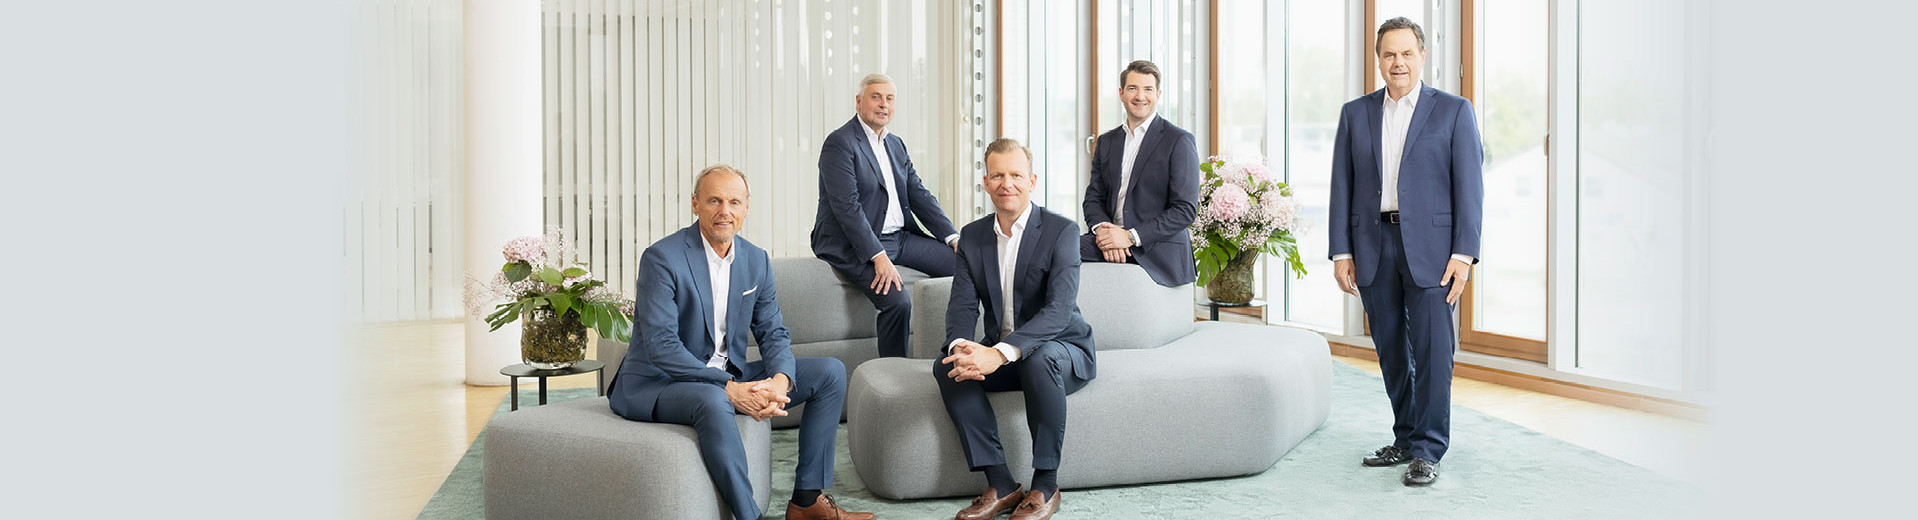 Die Geschaeftsfuehrung der PARI-Unternehmensgruppe – Arne W. Dirks, Jürgen Müller, Dr. Frank Bredl, Dr. Stefan Seemann, Geoff A. Hunziker